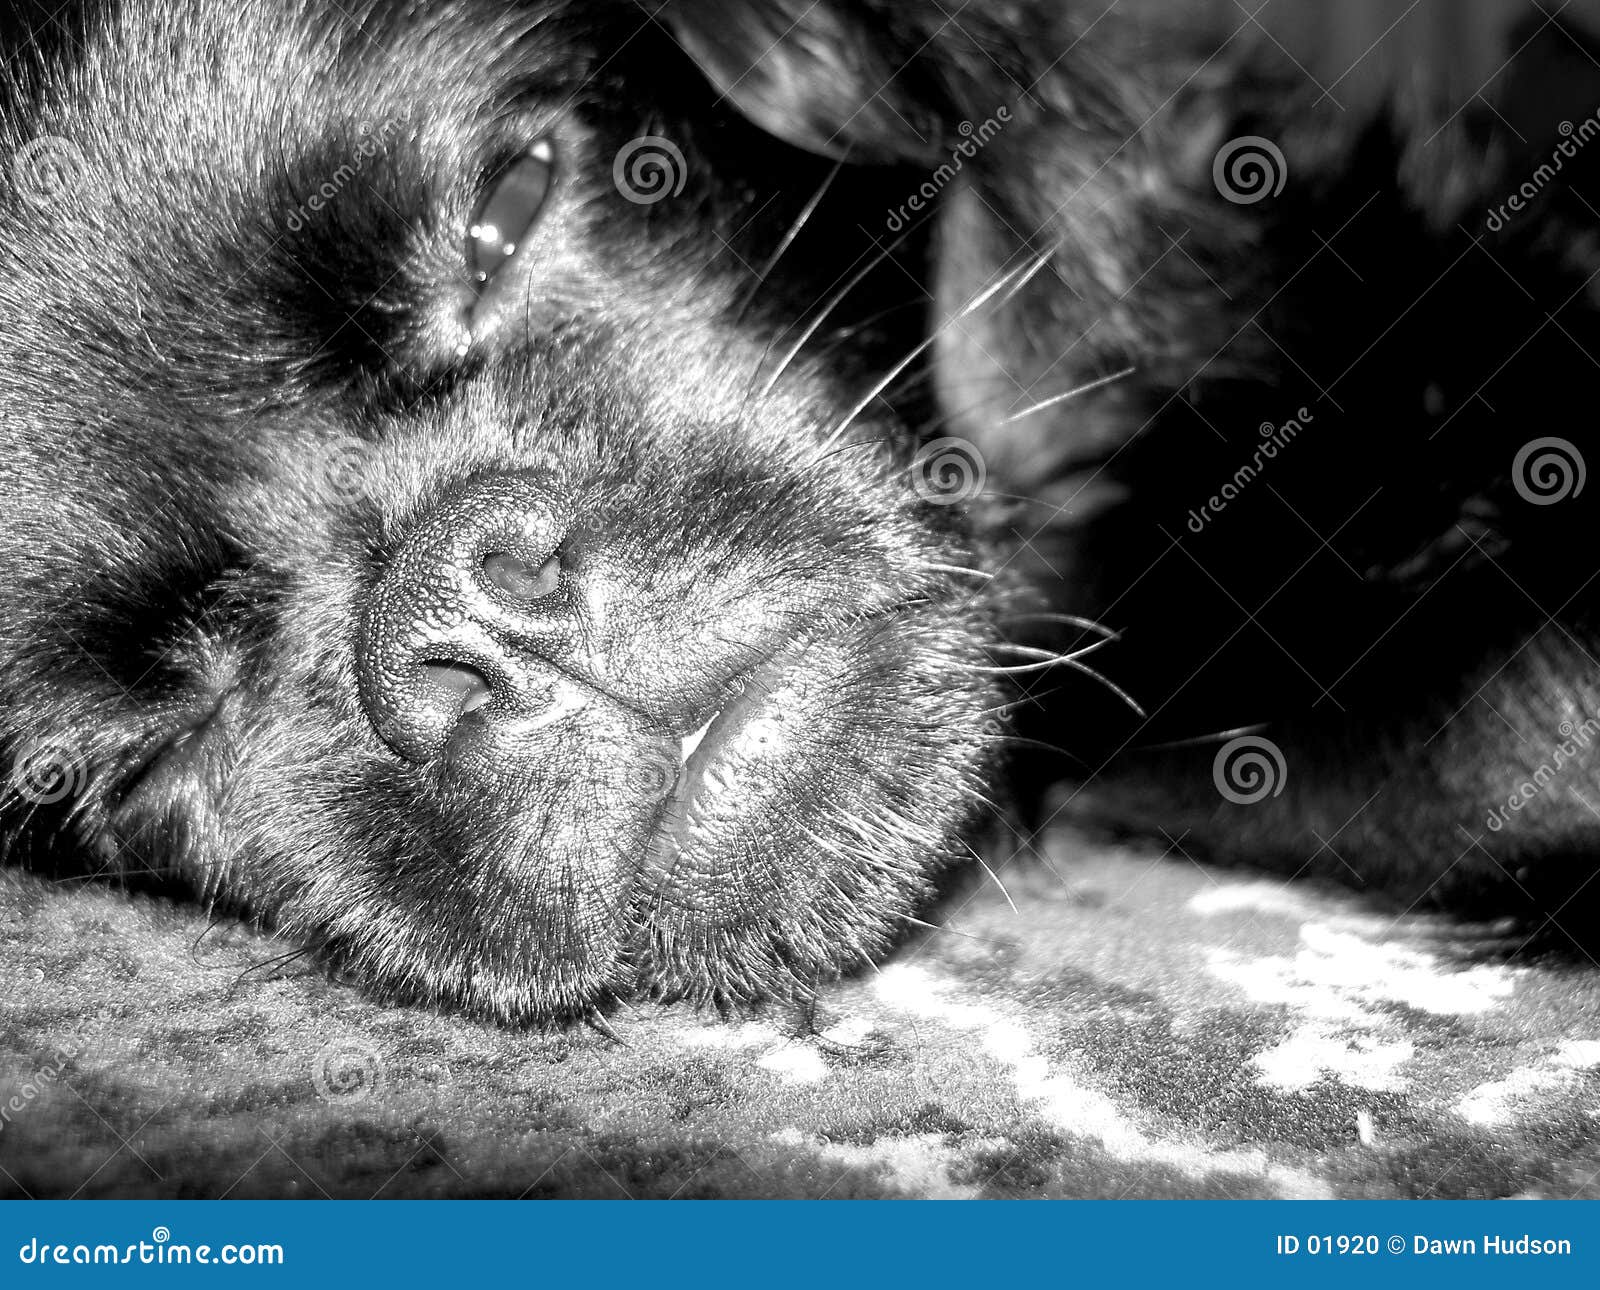 睡着的狗 库存照片. 图片 包括有 敬慕, 枕头, 环形, 滑稽, 打瞌睡, 逗人喜爱, 小狗, 时钟, 晚上 - 24345090